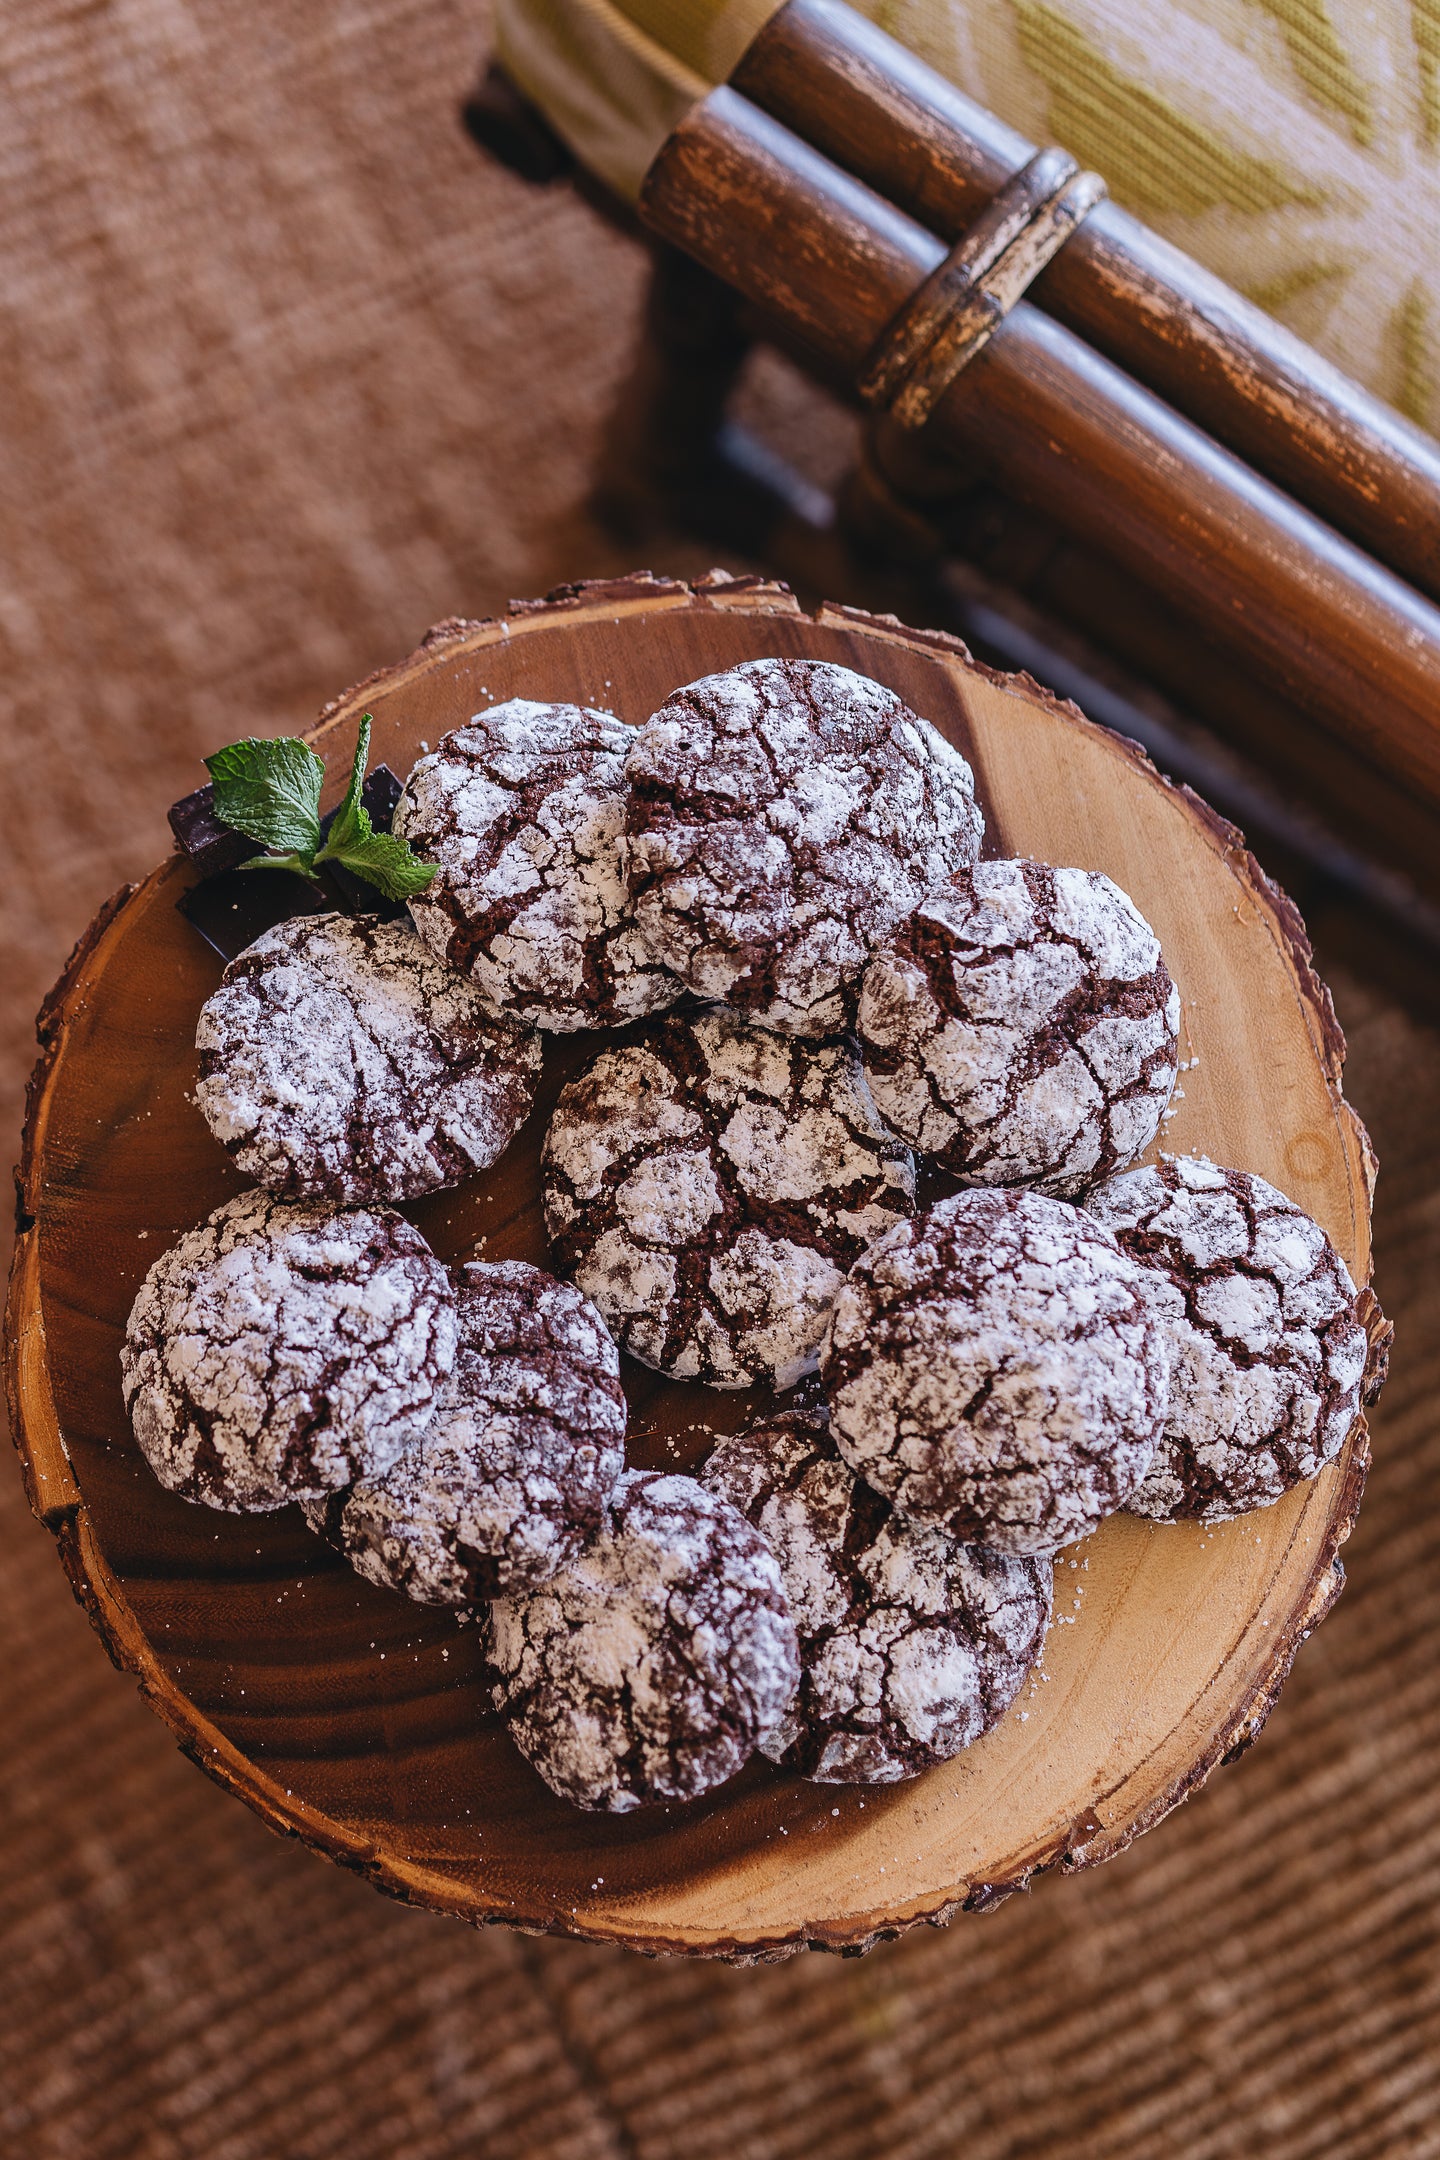 Vegan Chocolate Peppermint Crinkle Cookies